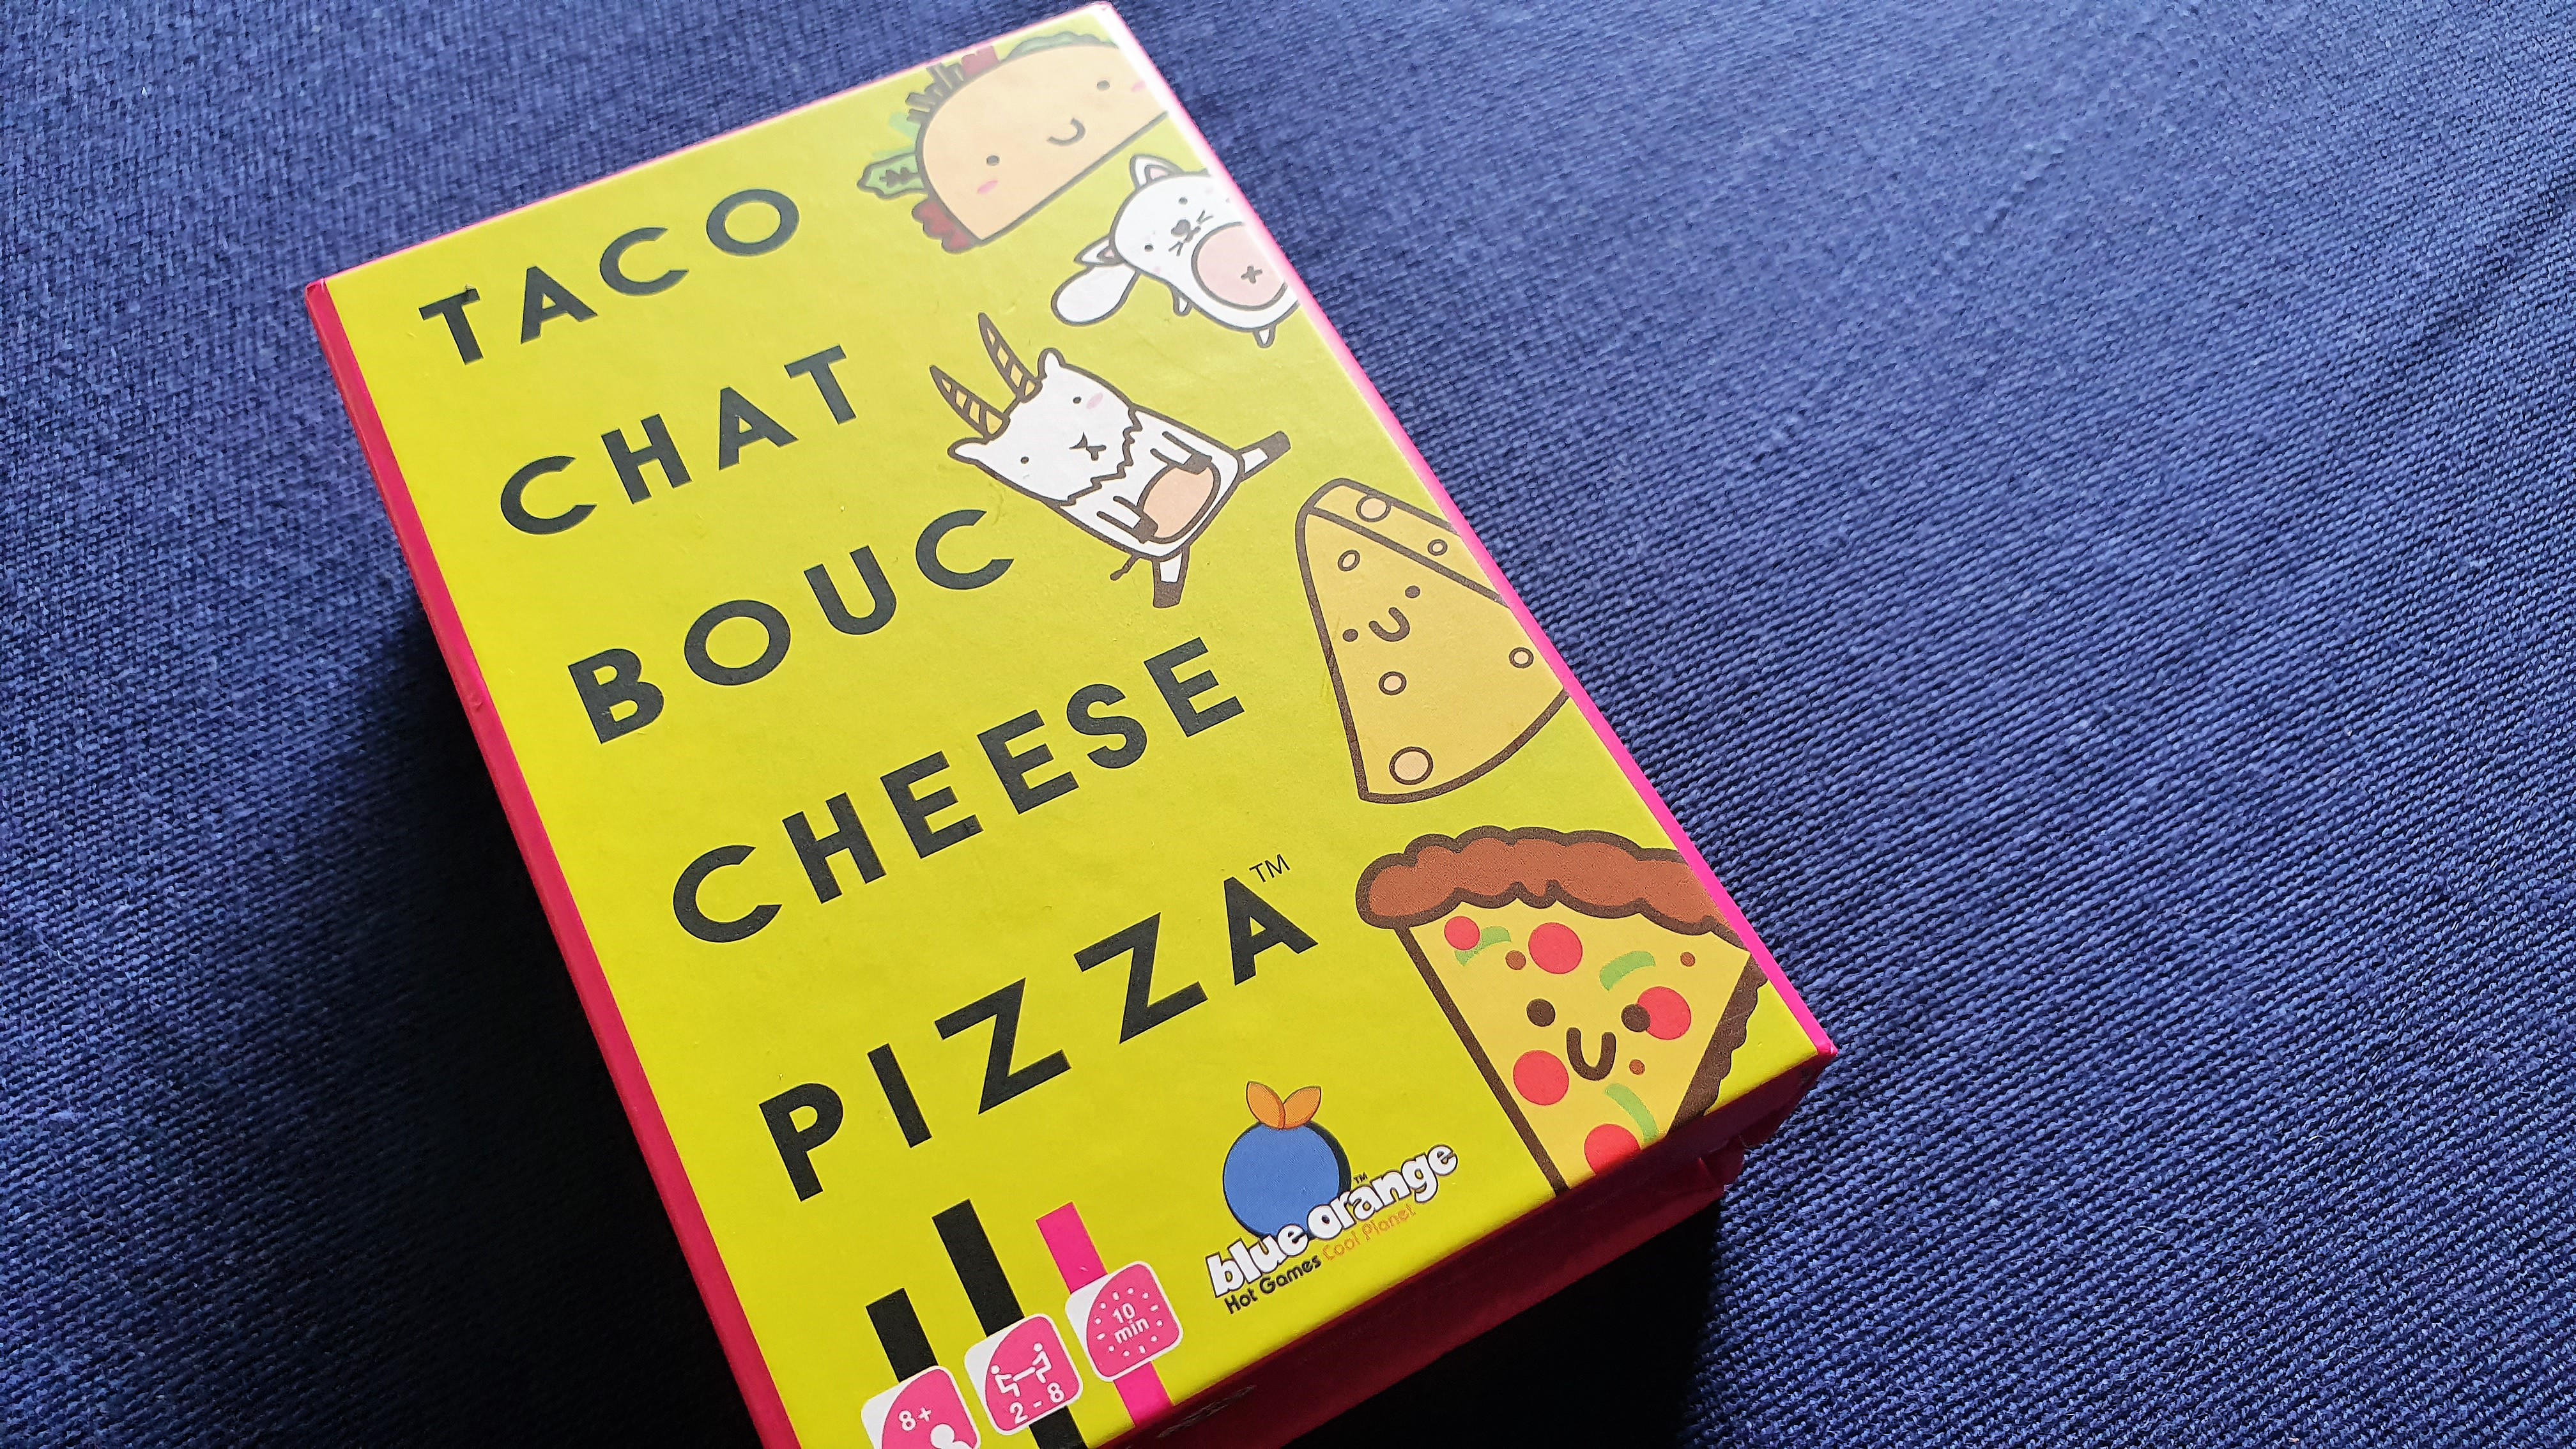 Taco Chat Bouc Cheese Pizza - Jeu de Cartes - Acheter sur